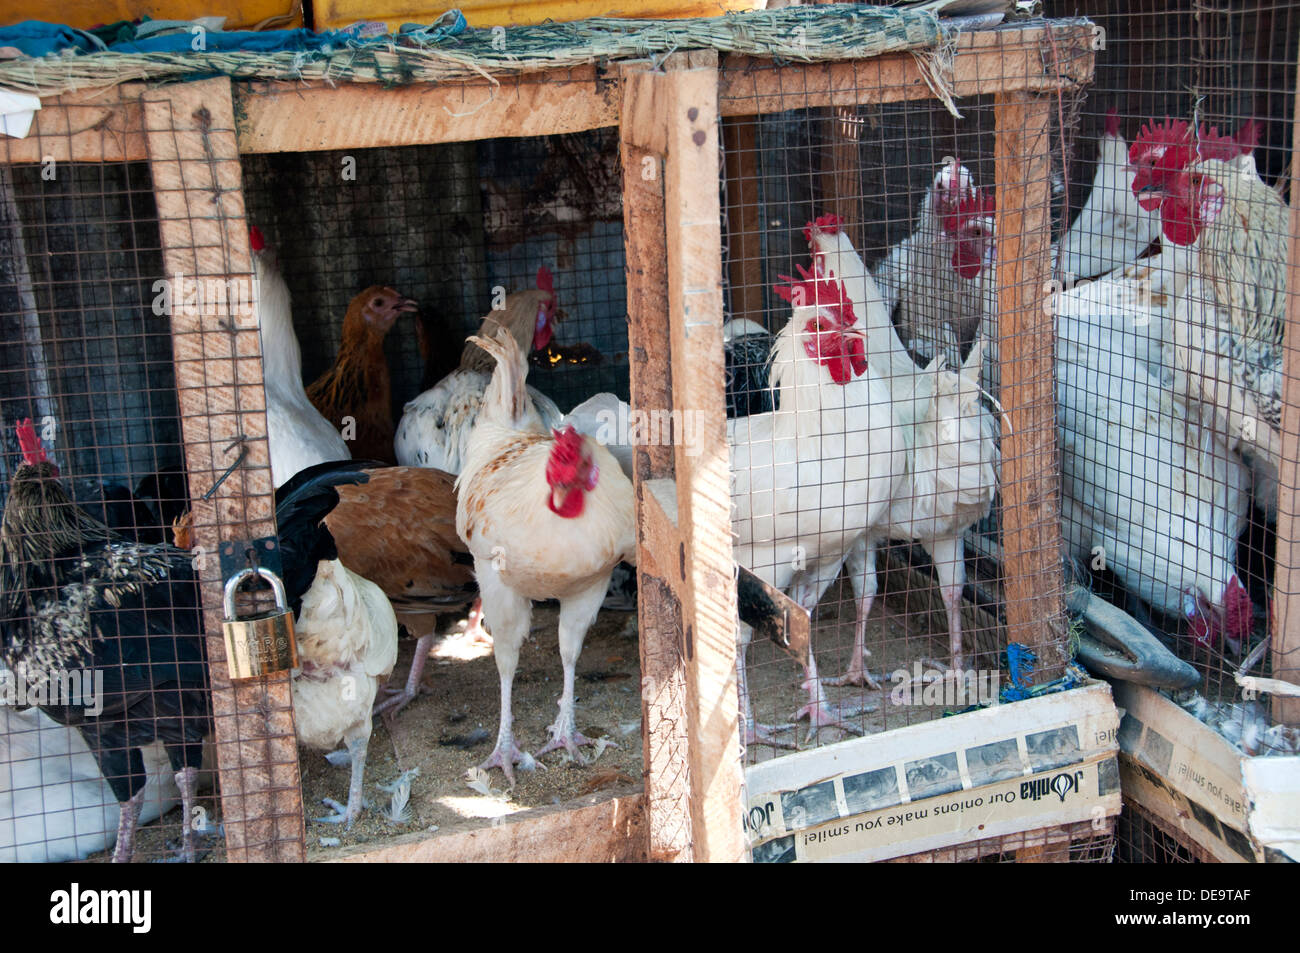 Pollos hacinados en jaulas, Mercado de Serrekunda, Gambia, al oeste de África. Foto de stock